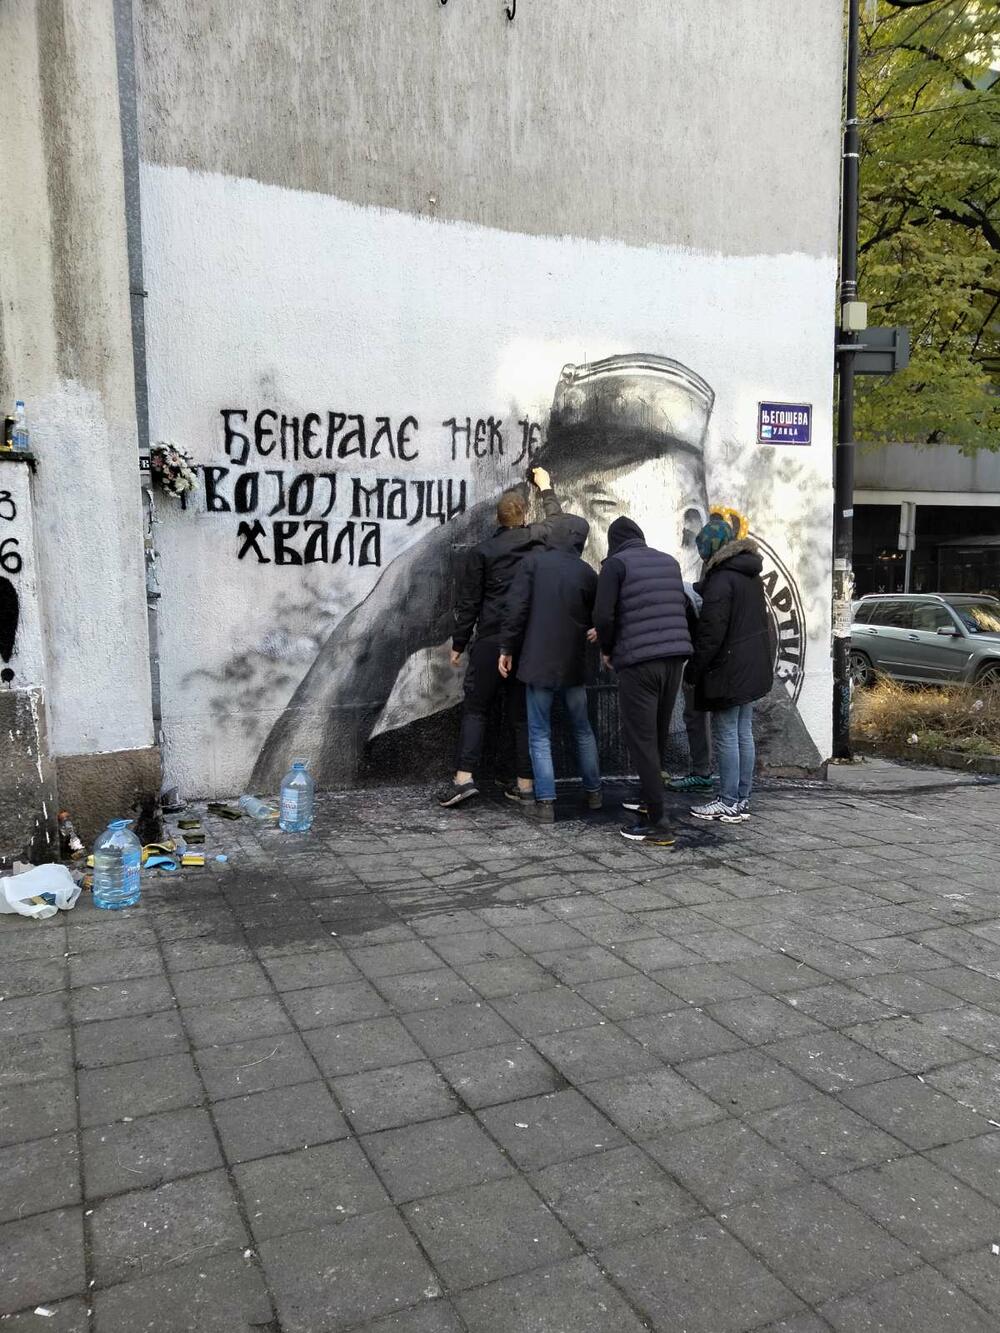 Ratko Mladić, muraj Ratka Mladića, mural, Njegoševa